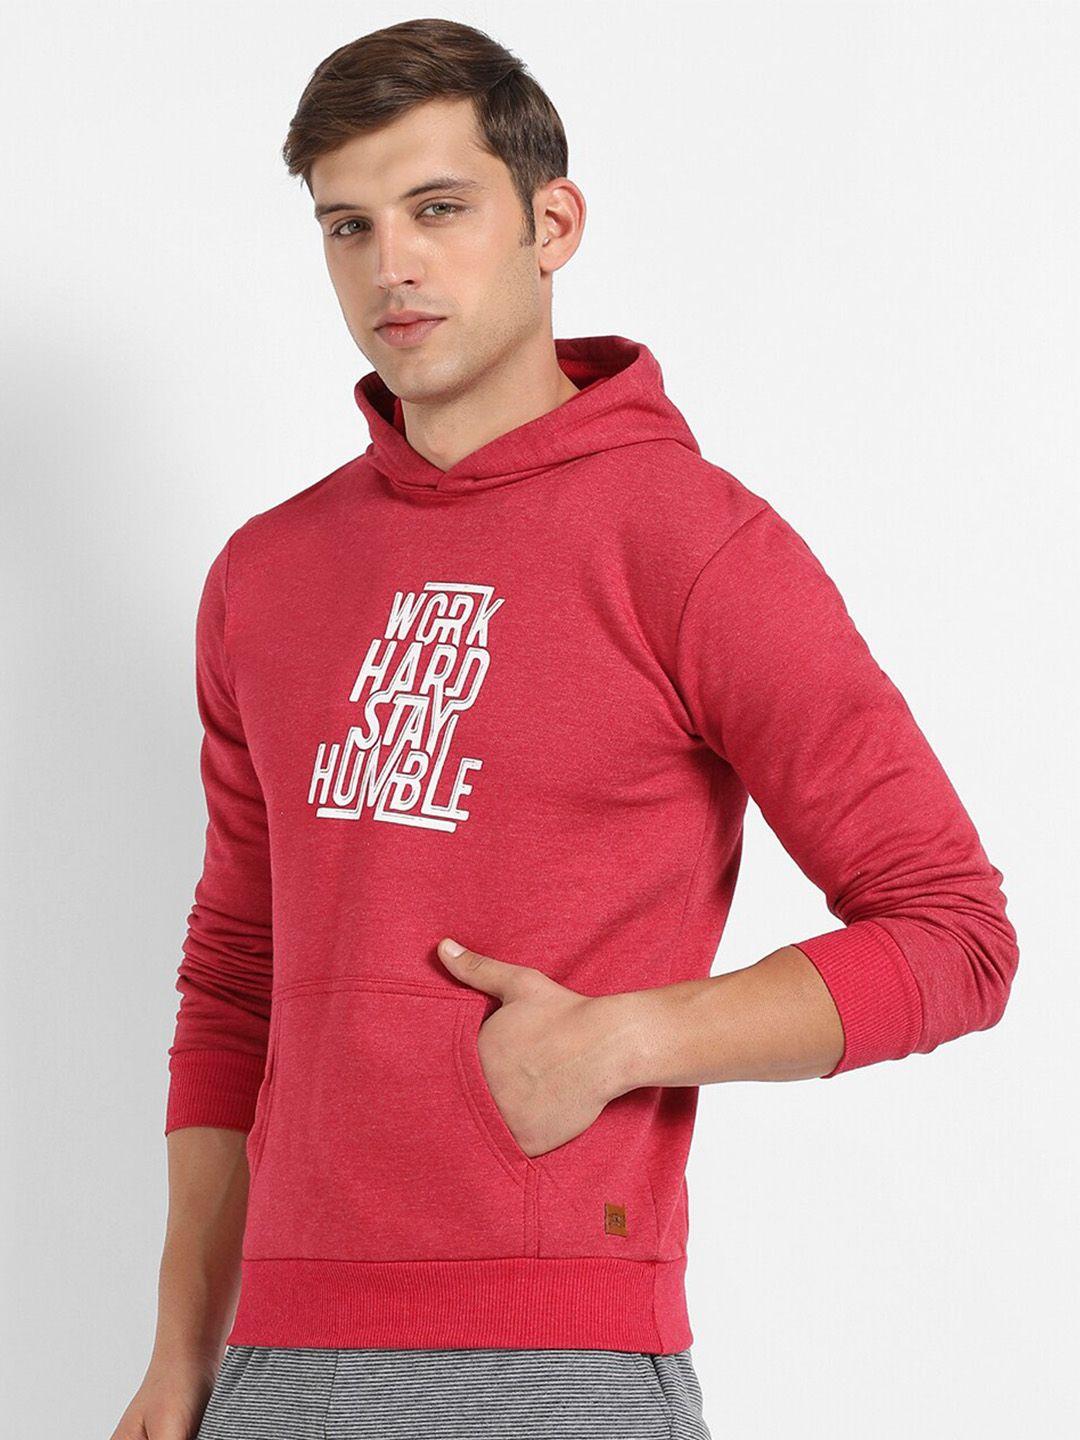 campus-sutra-men-red-printed-hooded-sweatshirt